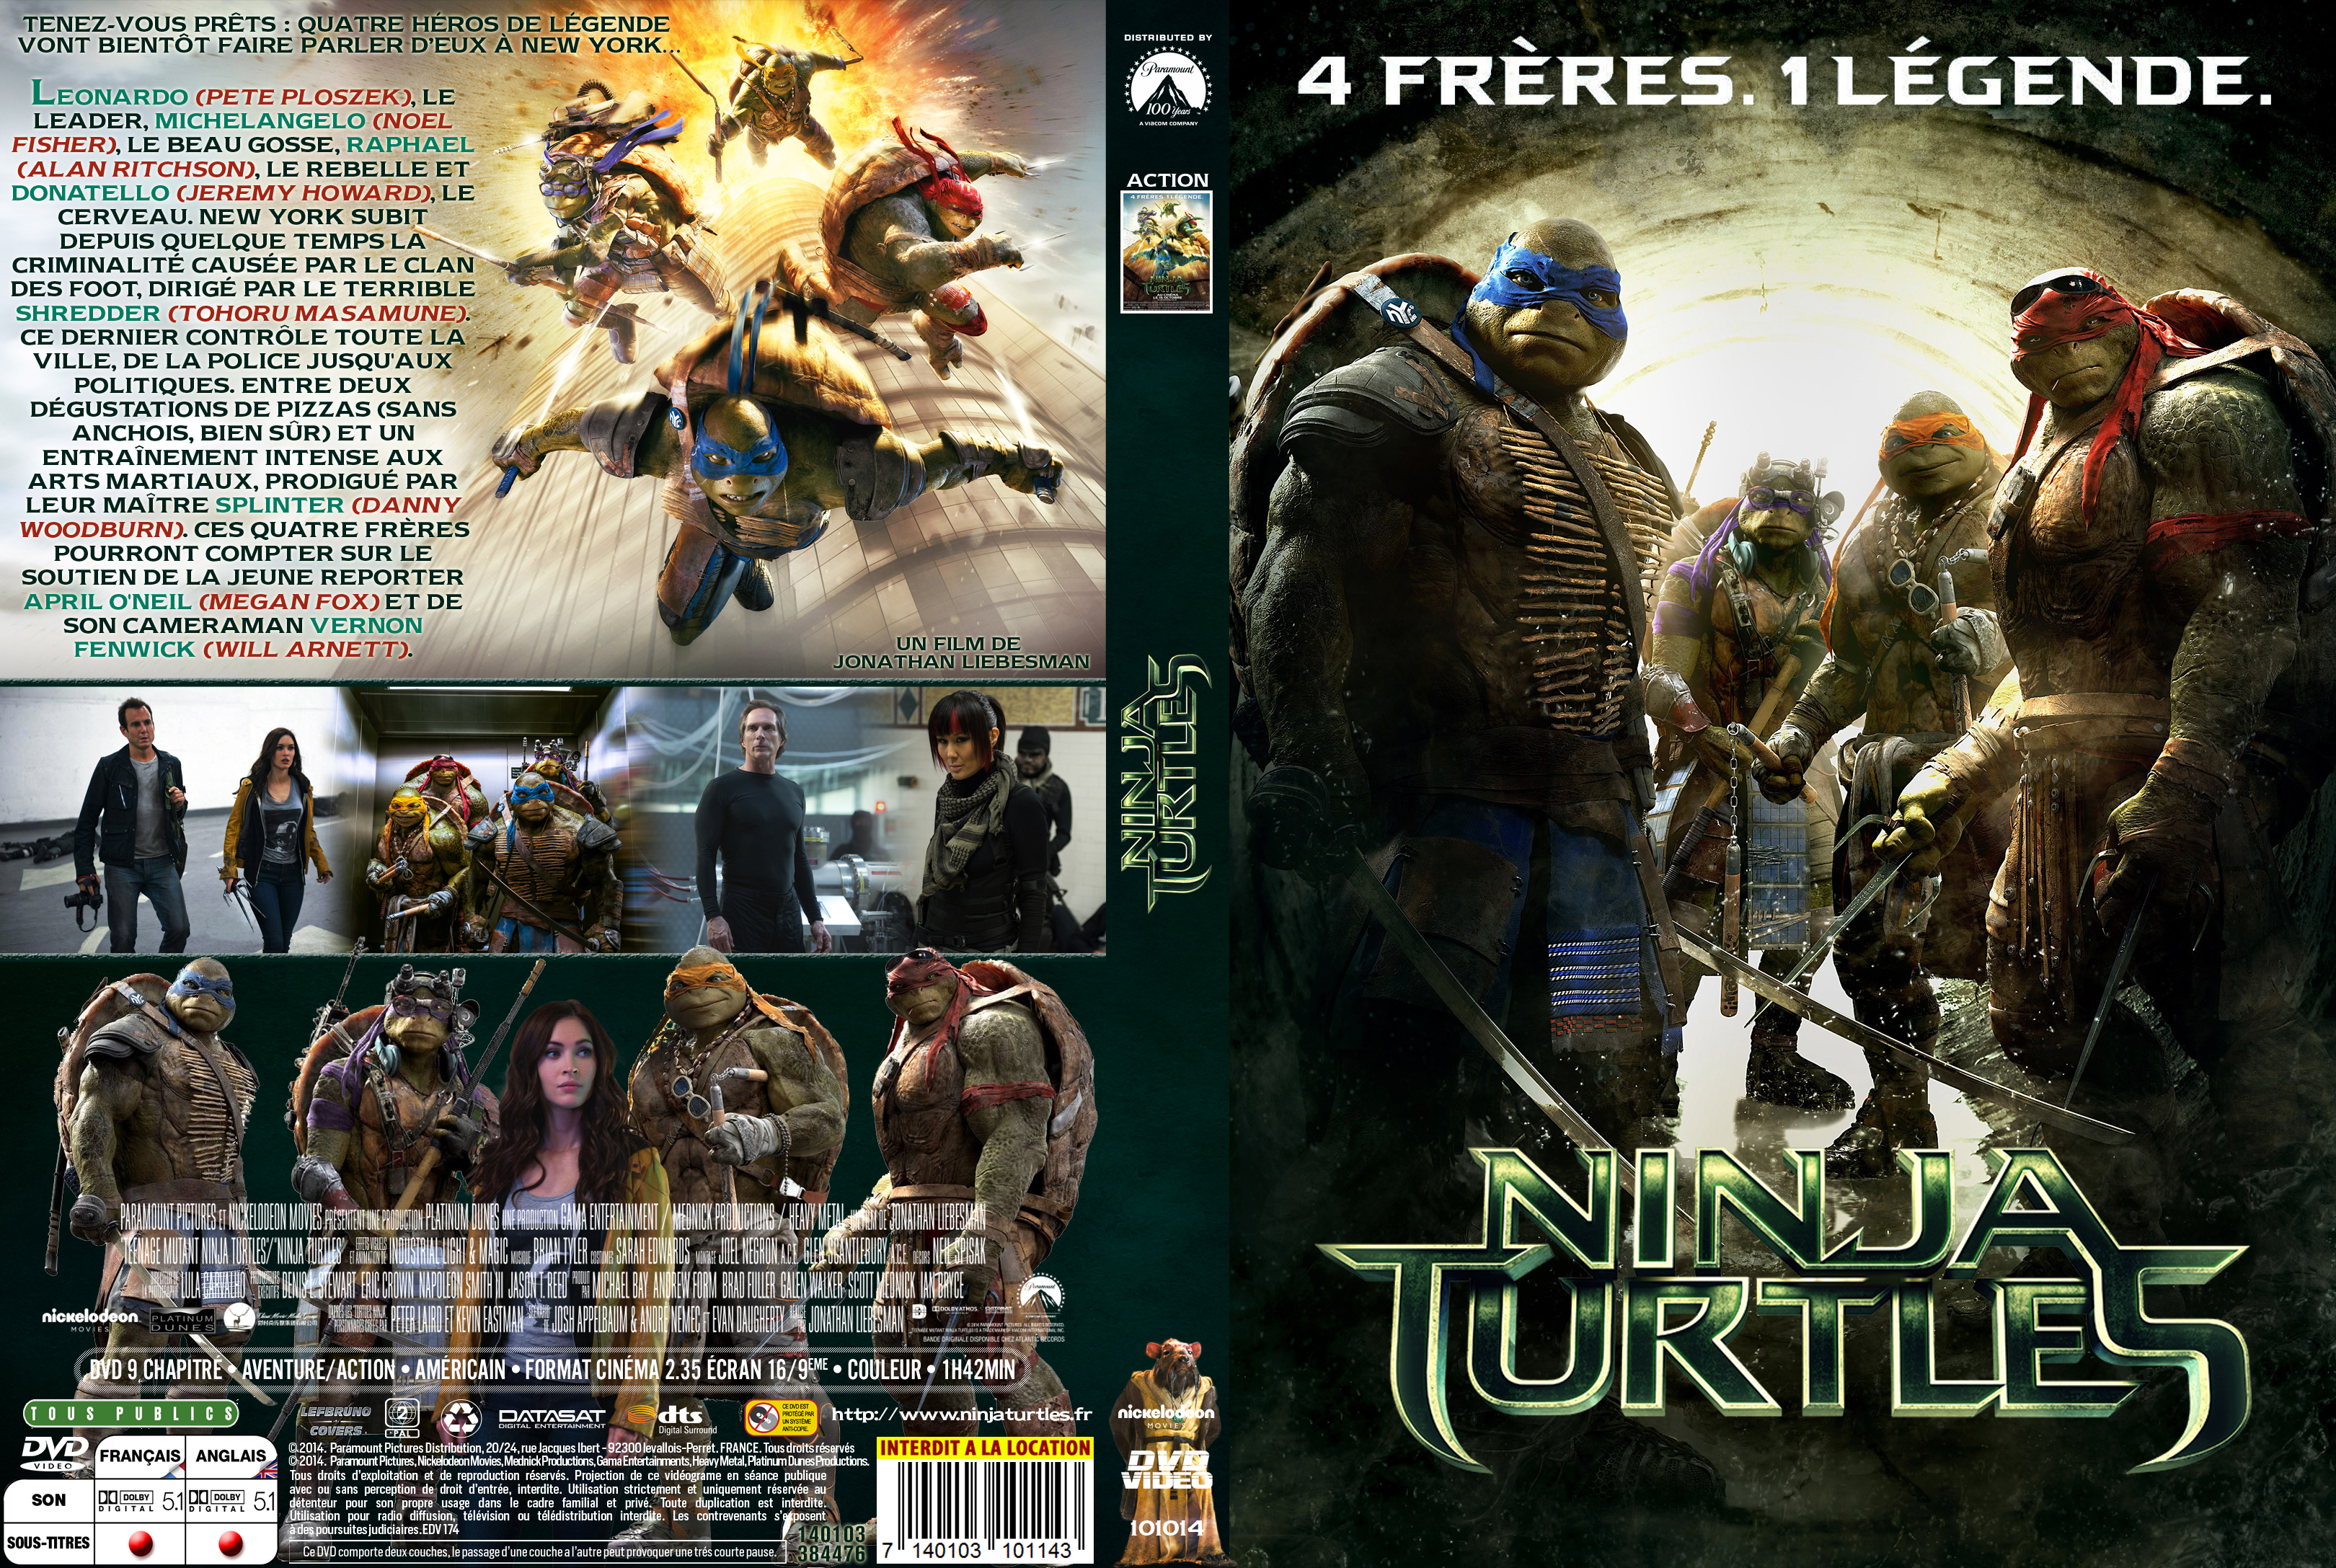 Jaquette DVD Ninja Turtles custom